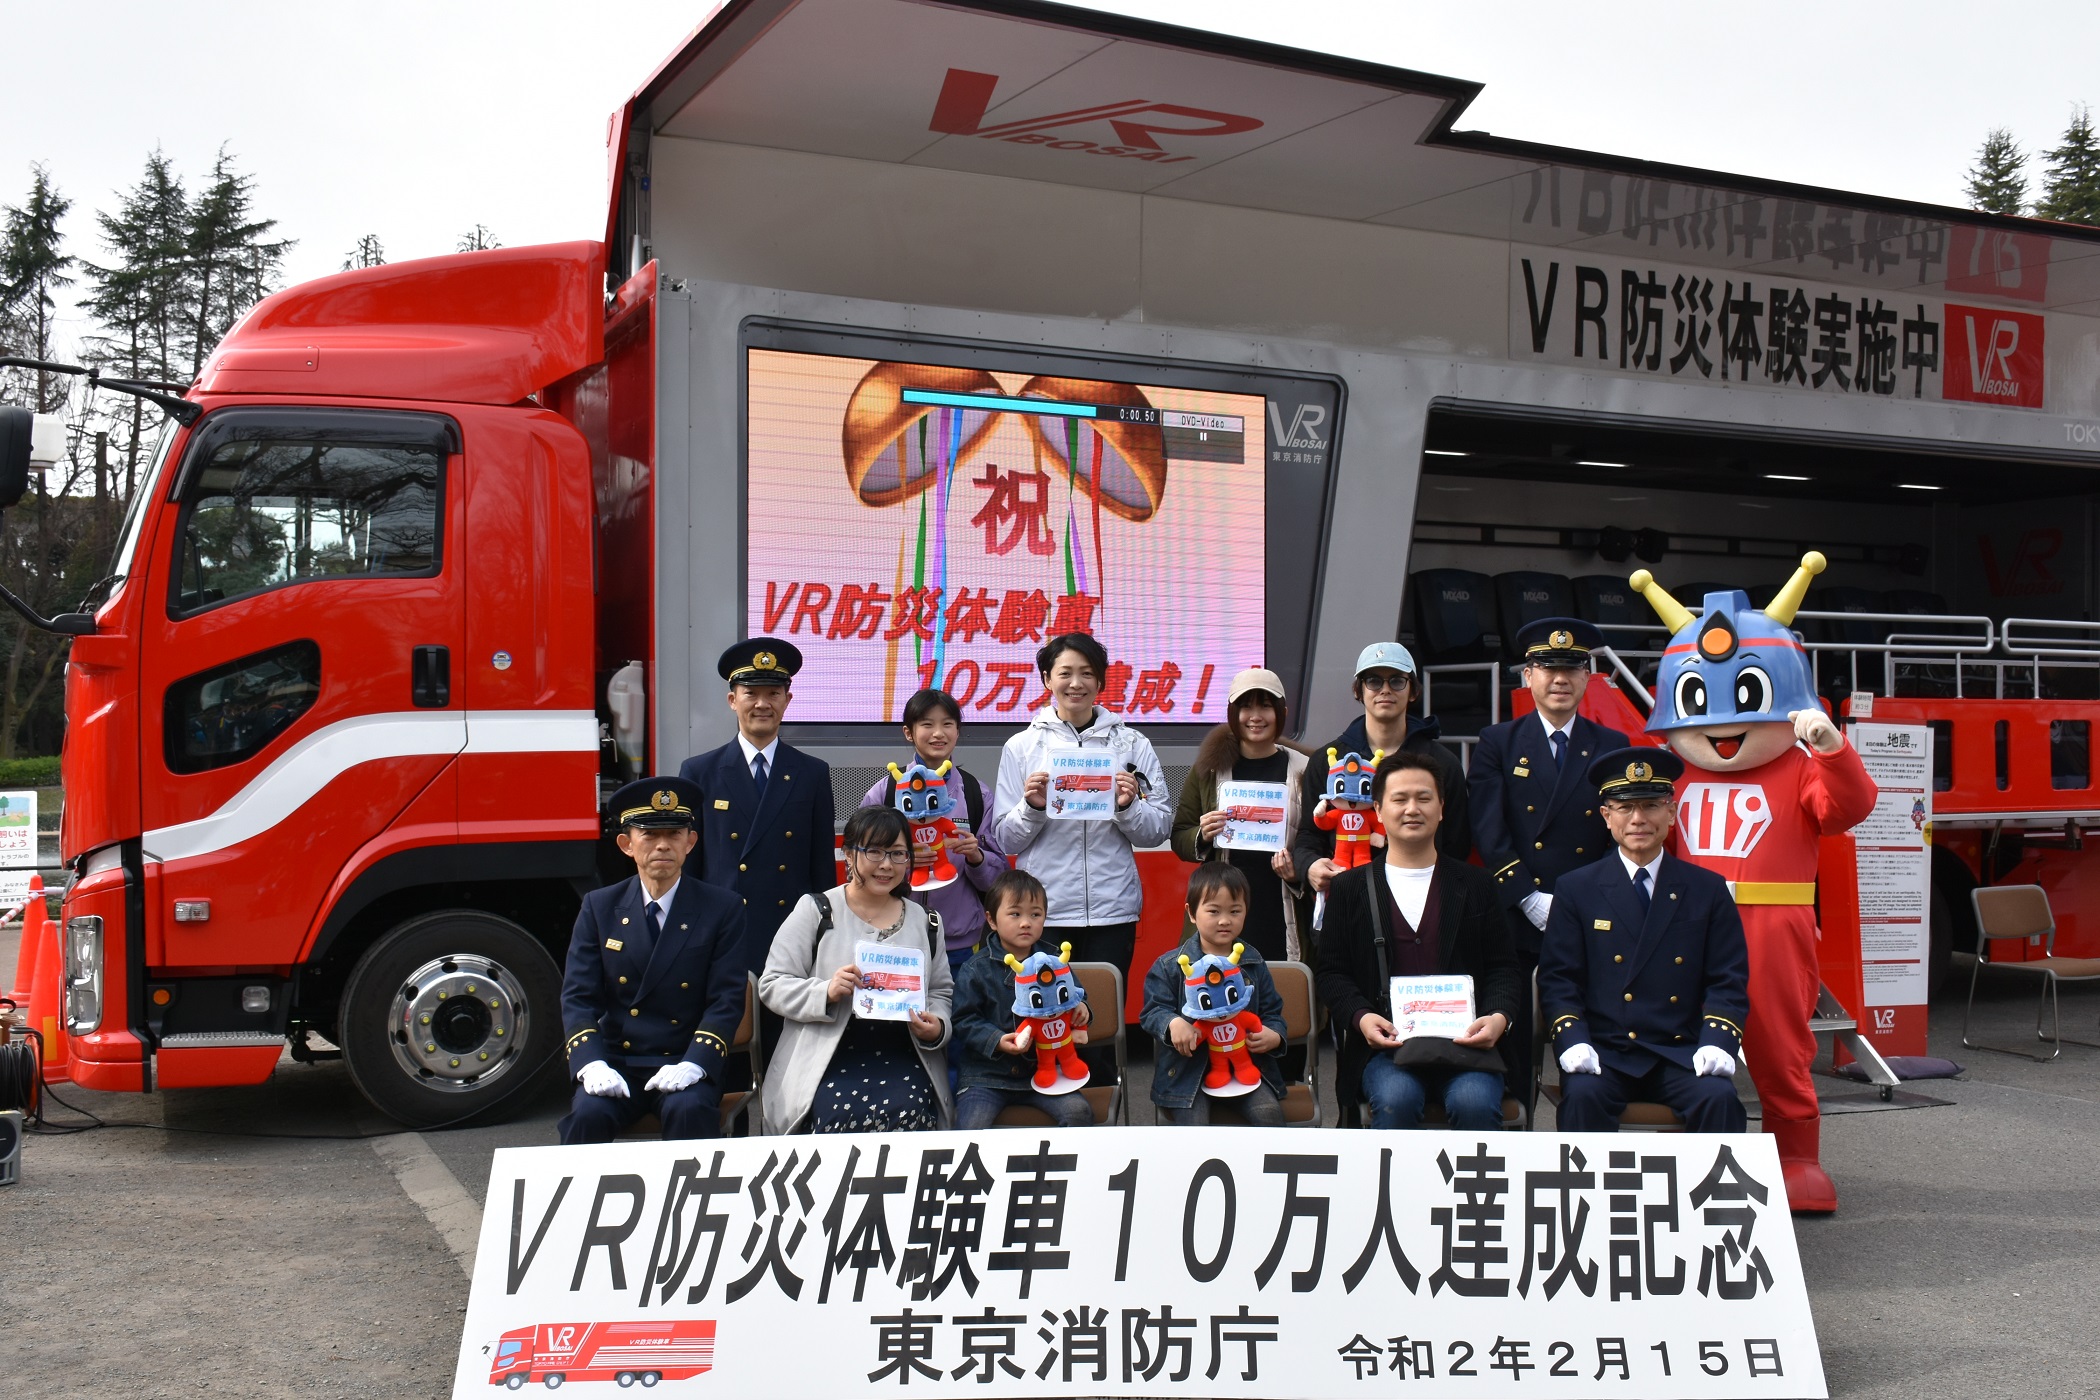 東京消防庁 組織 施設 ｖｒ防災体験車の累計訓練者数が１０万人を達成